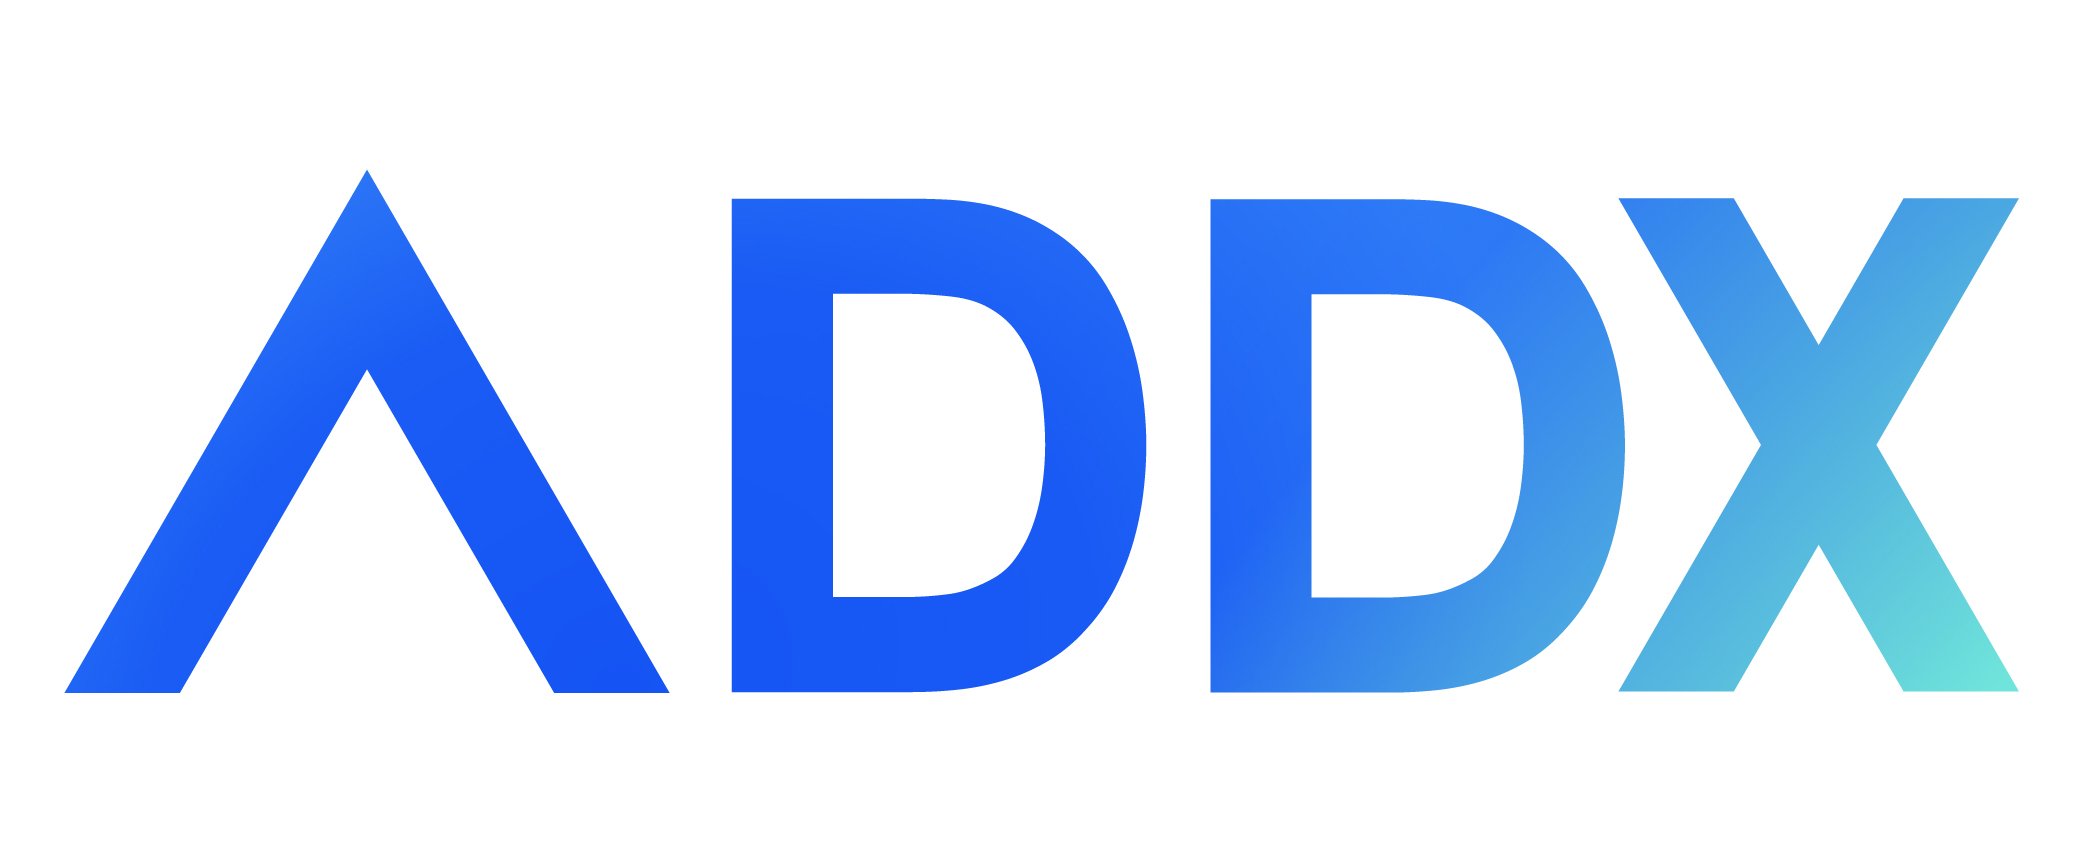 Nền tảng chứng khoán kỹ thuật số ADDX huy động được 58 triệu đô la - Blog chia sẽ kiến thức tài chính hàng đầu Việt Nam